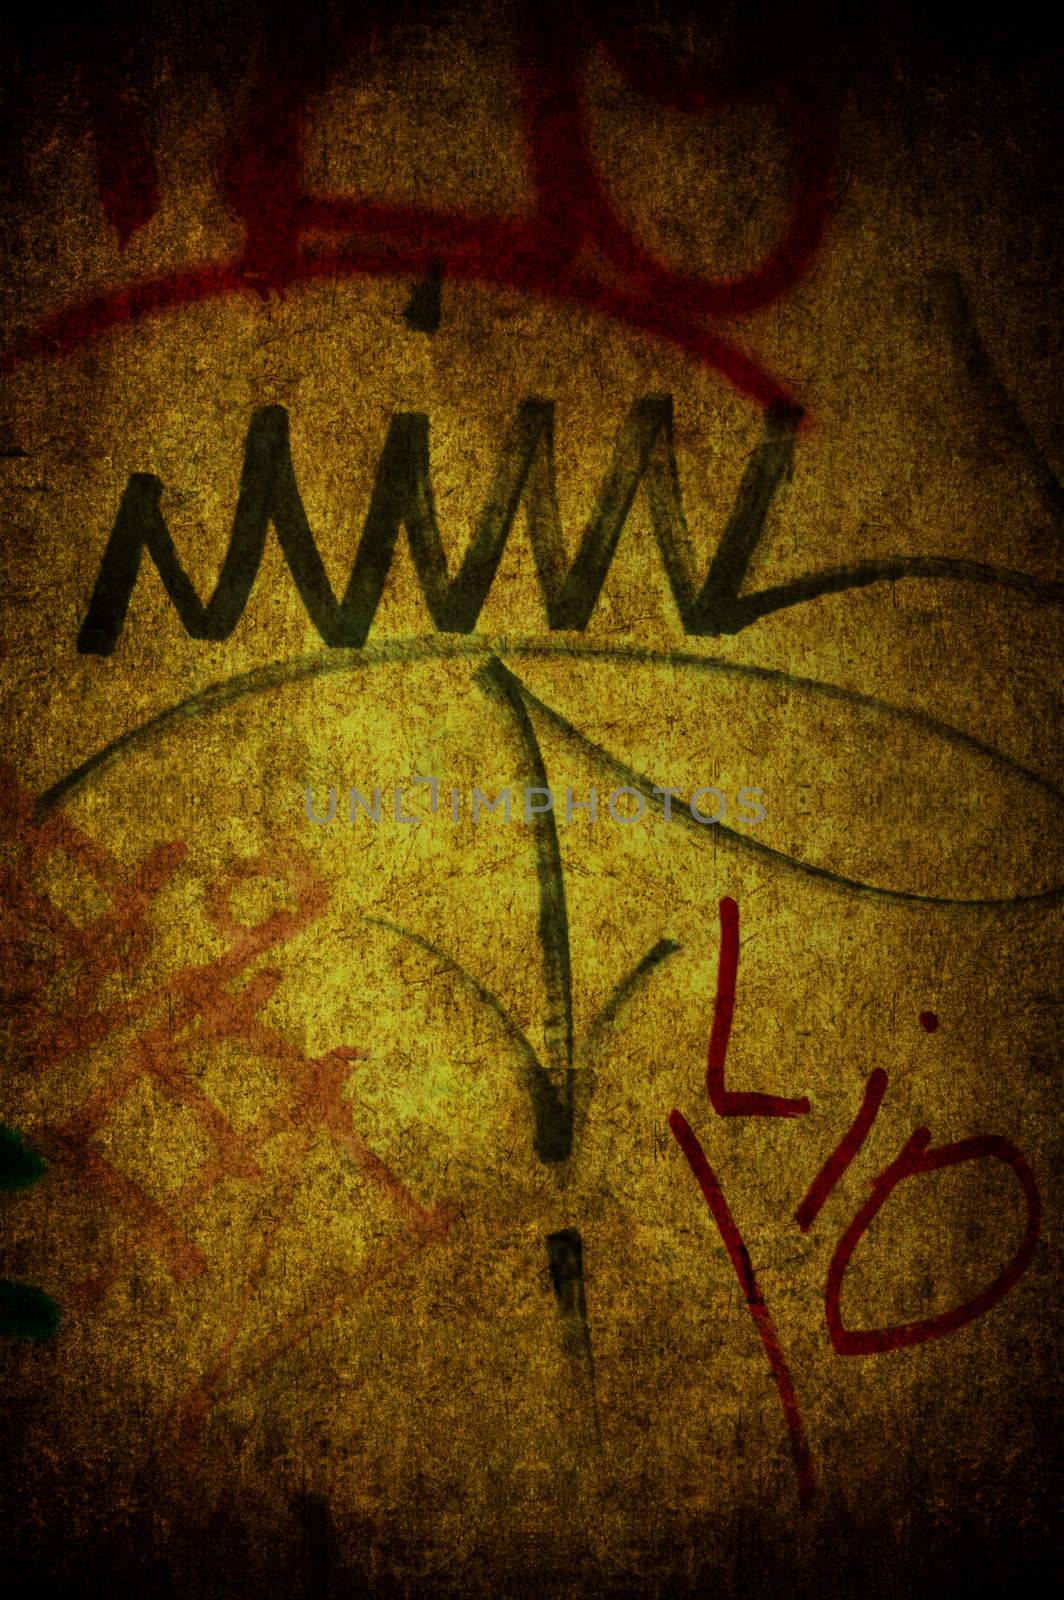 Grunge written wall by cla78